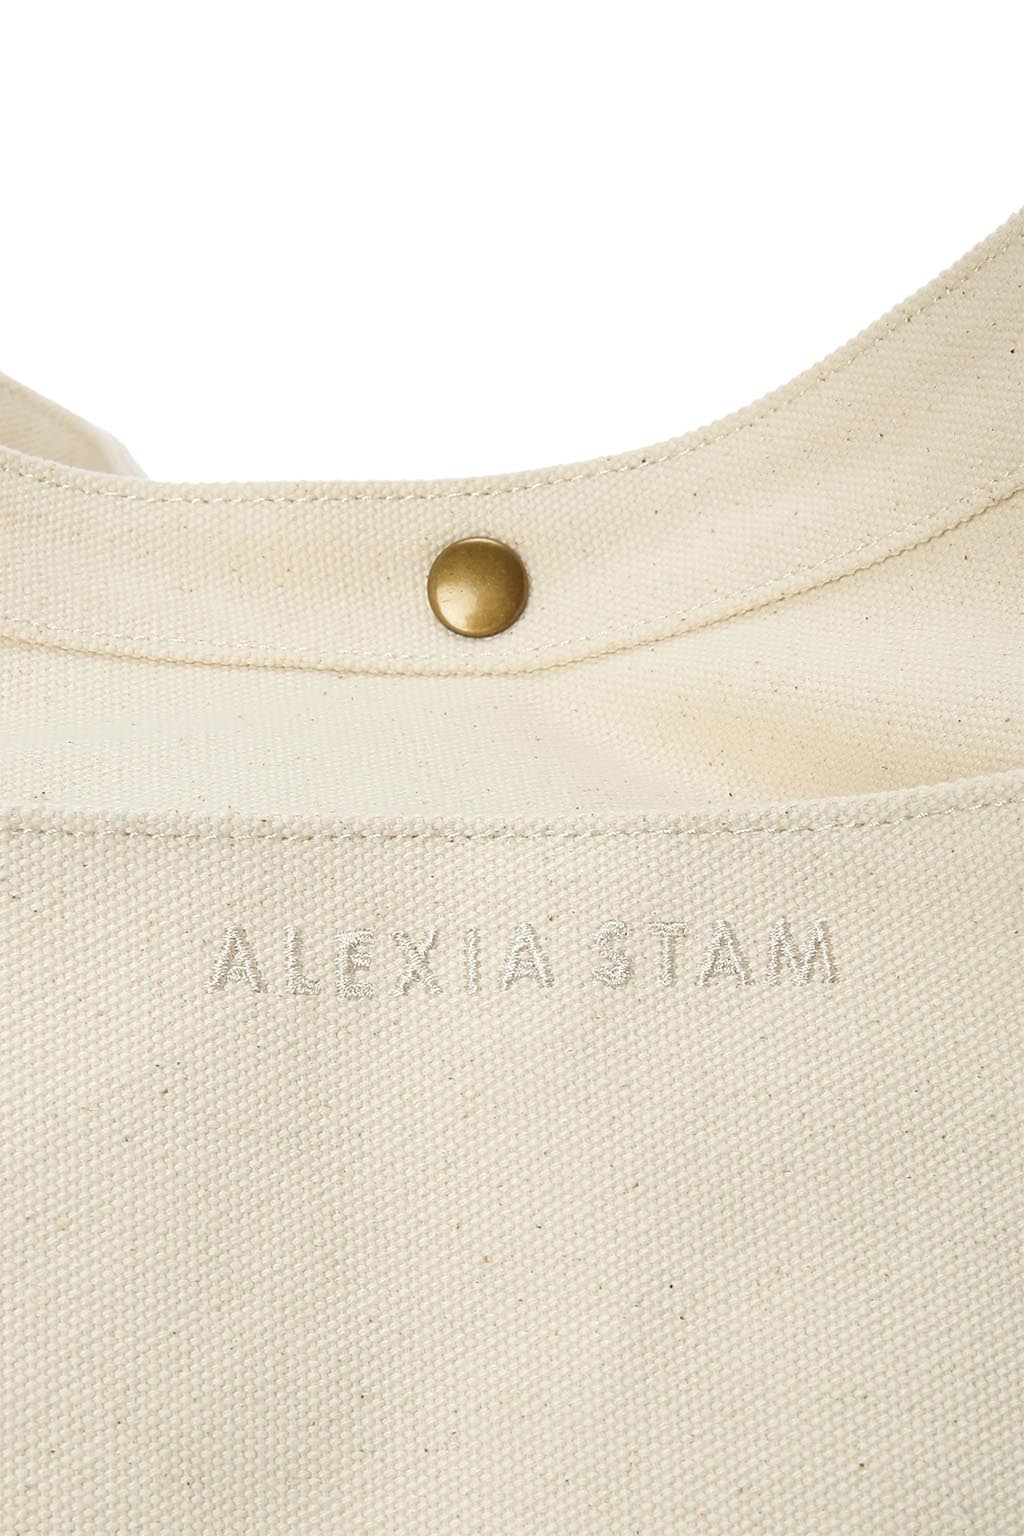 One Shoulder Bag Ivory - ALEXIA STAM